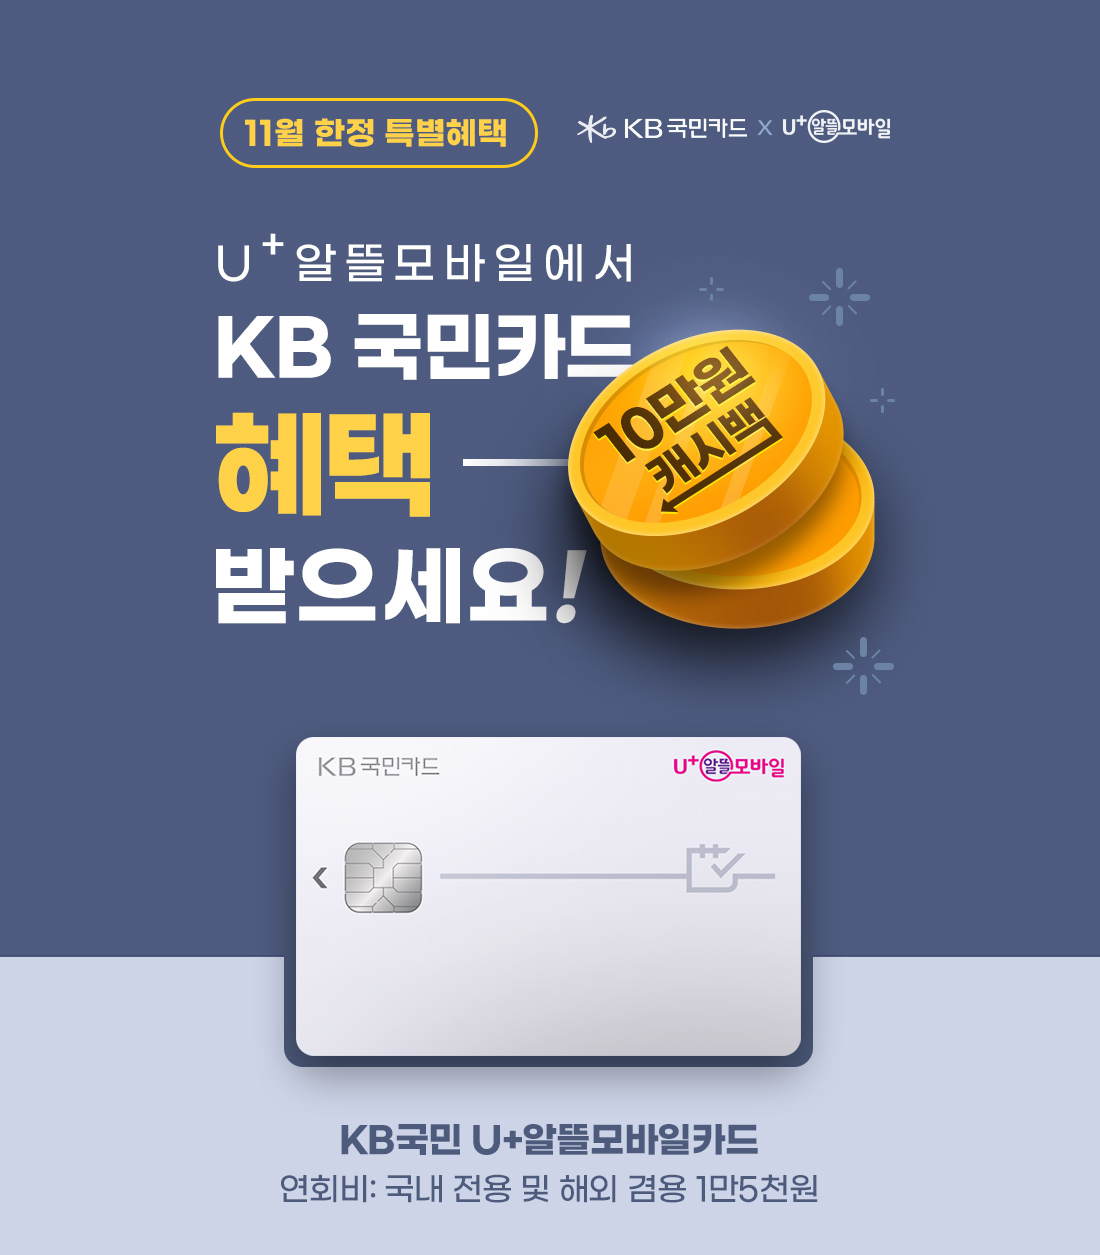 11월 한정 특별혜택 U+ 알뜰모바일에서 KB 국민카드 혜택 받으세요! 10만원 캐시백